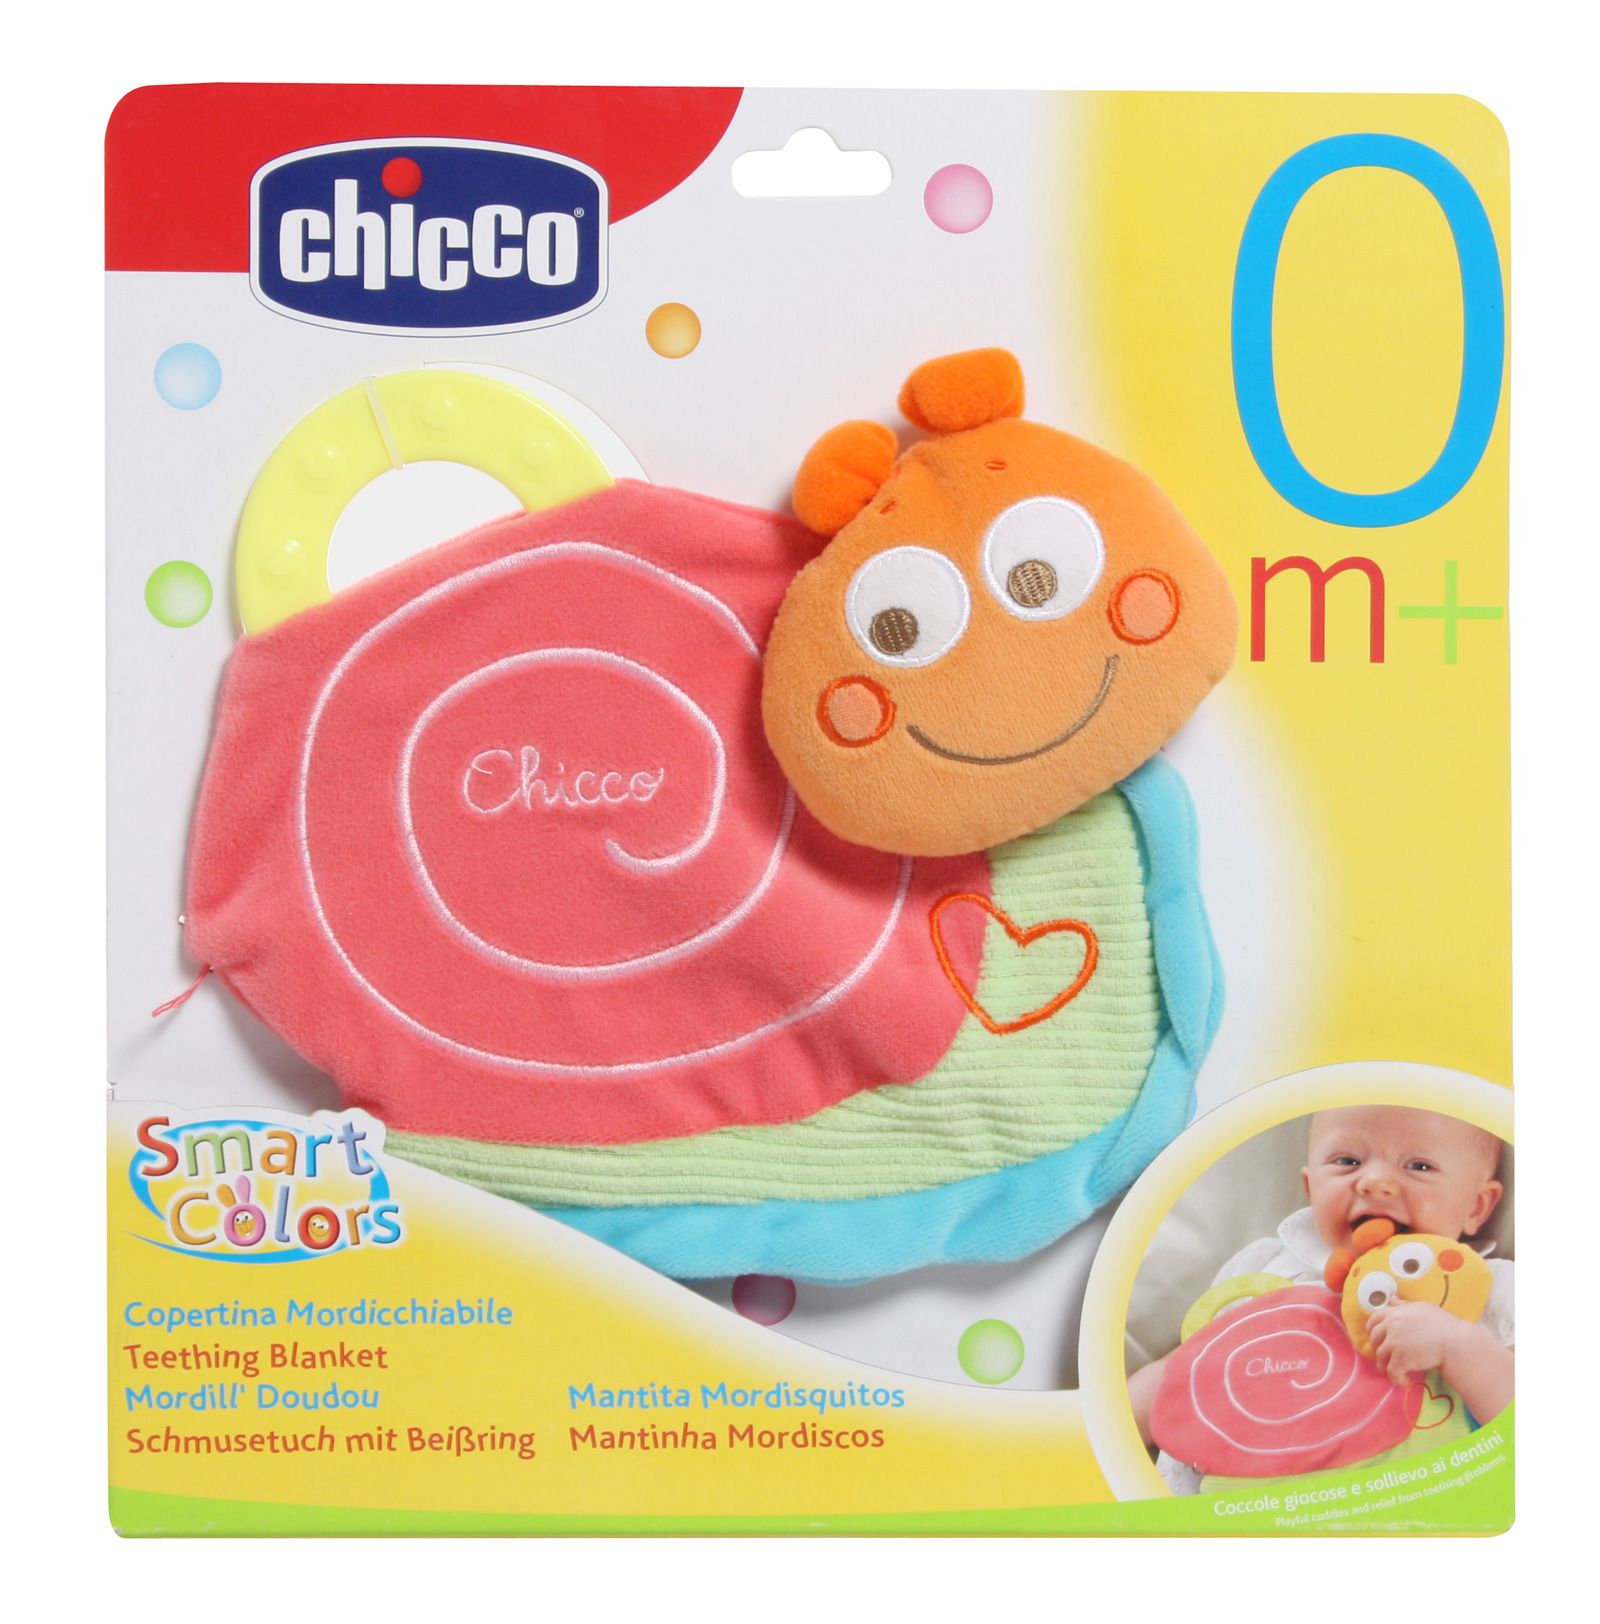 Chicco - Smart Colors Teething Blanket